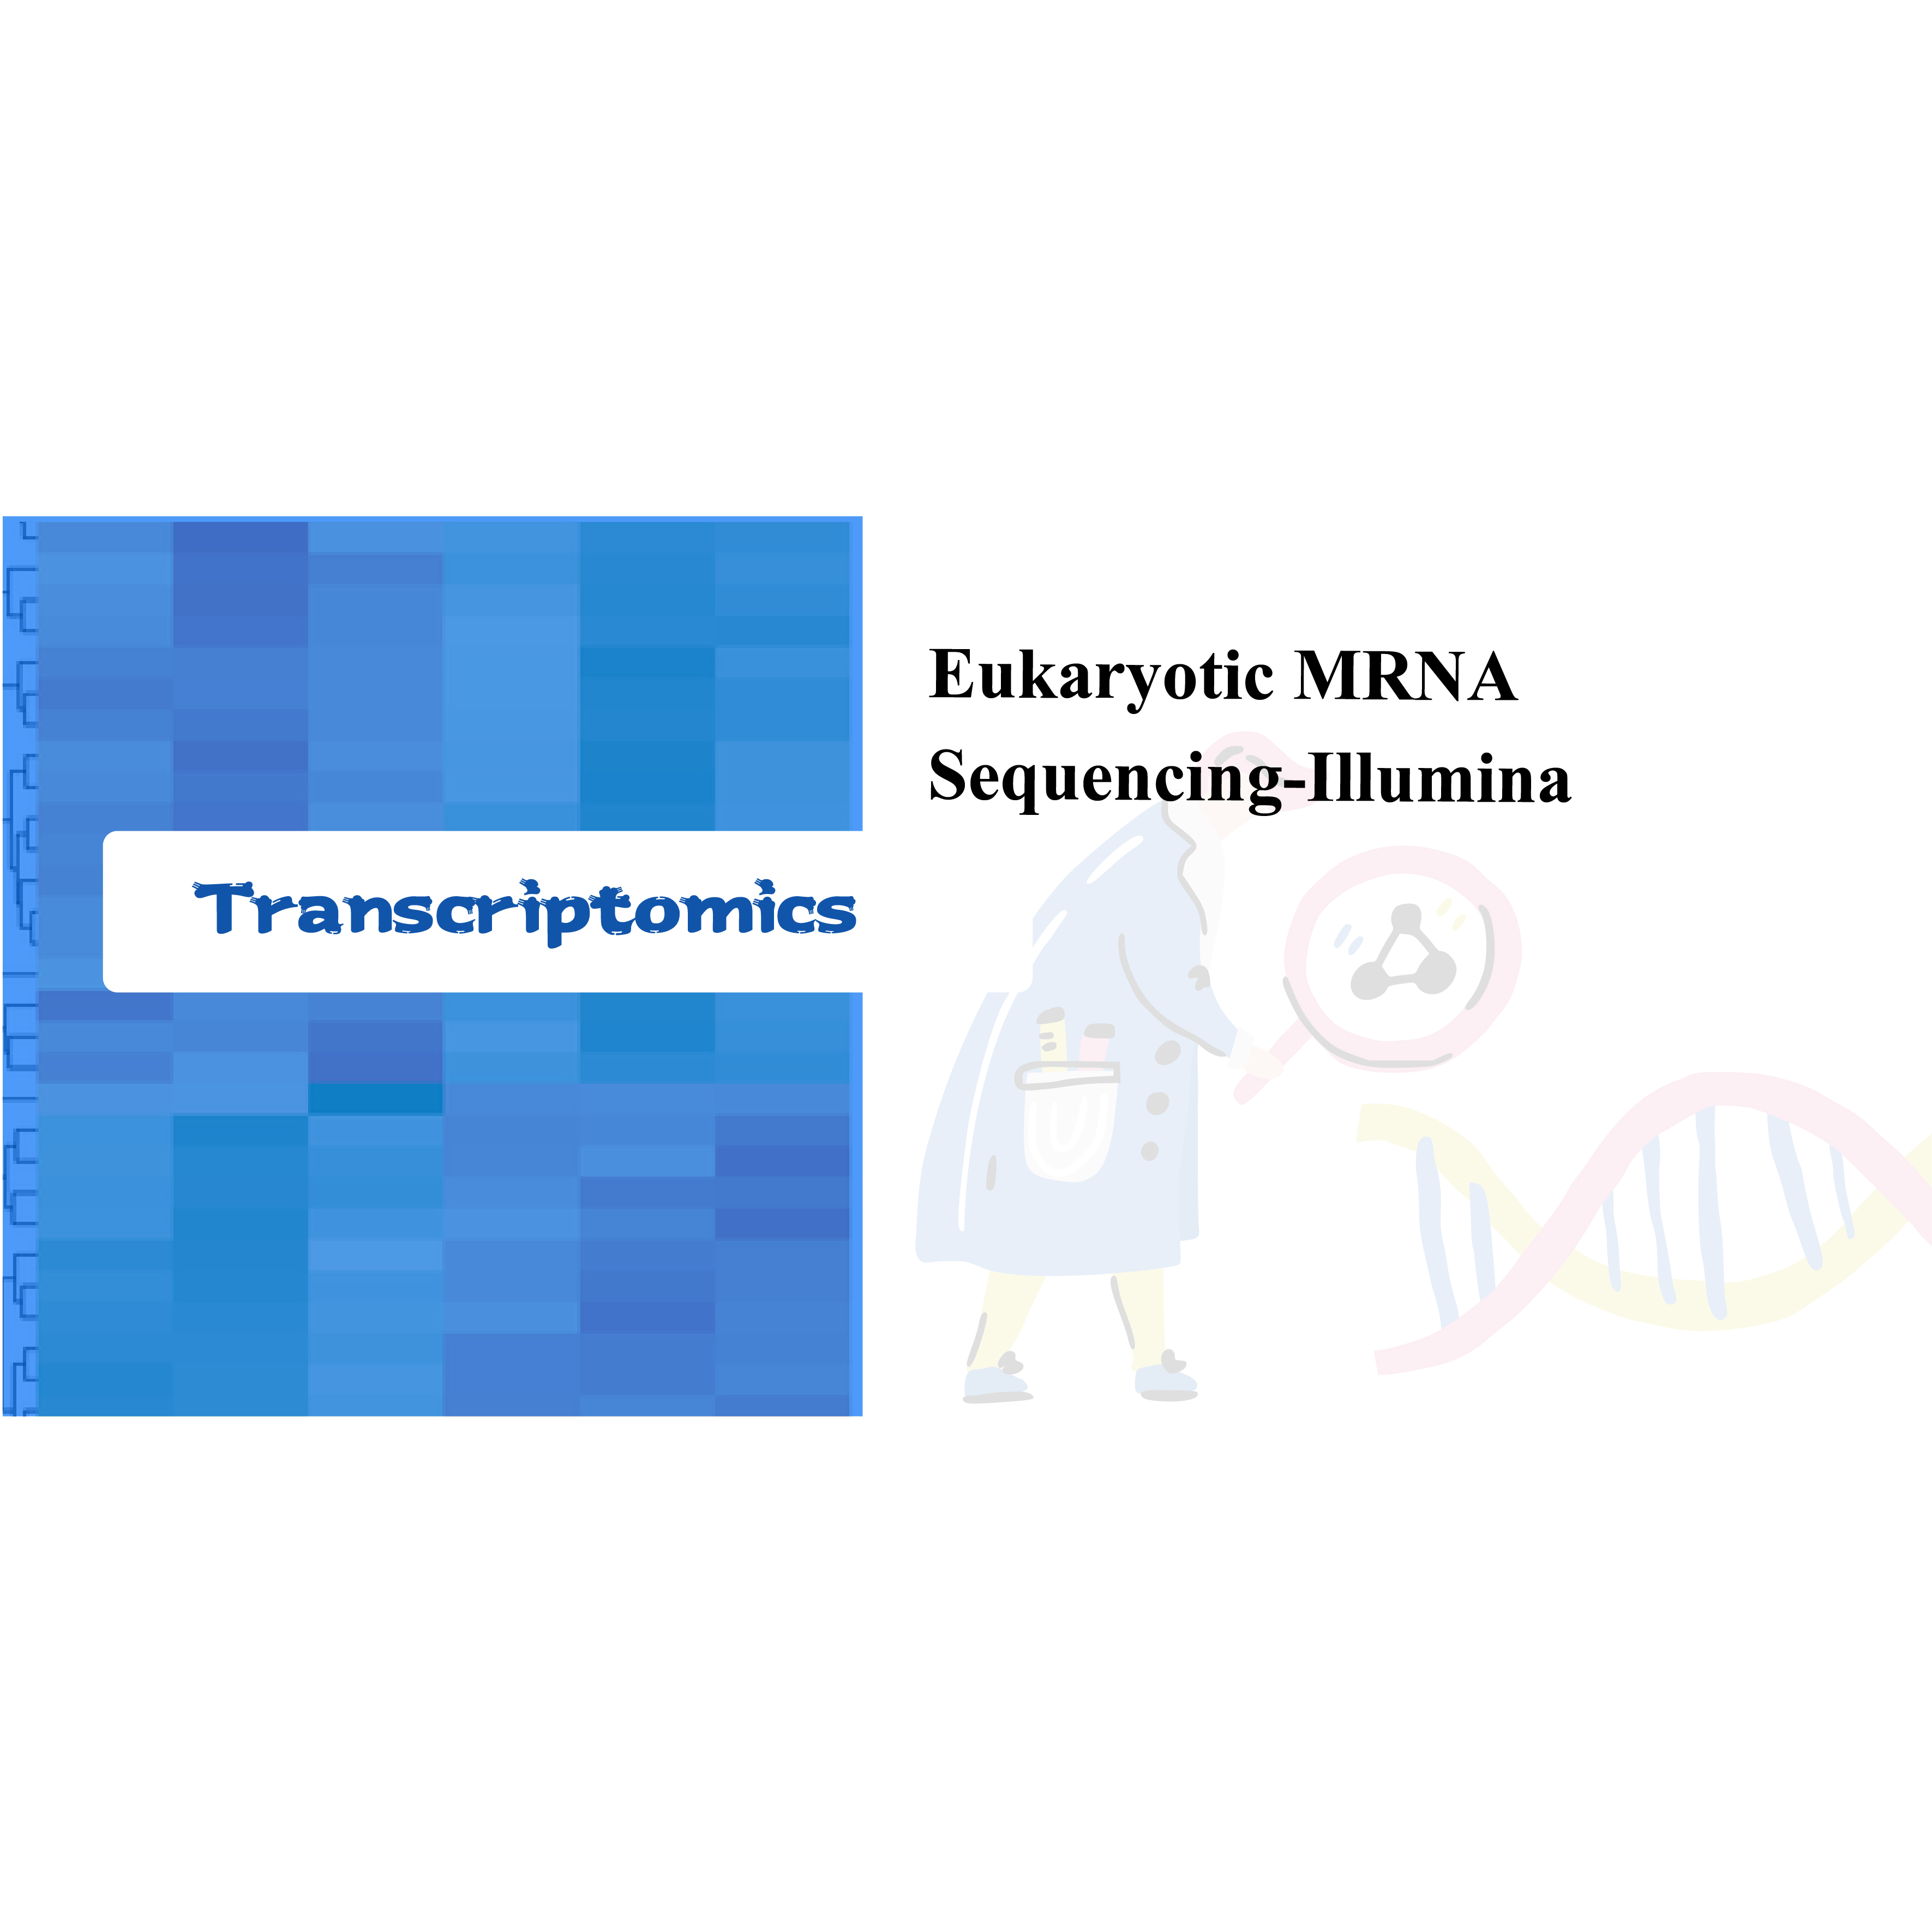 Eukariotik mRNA Sequencing-Illumina